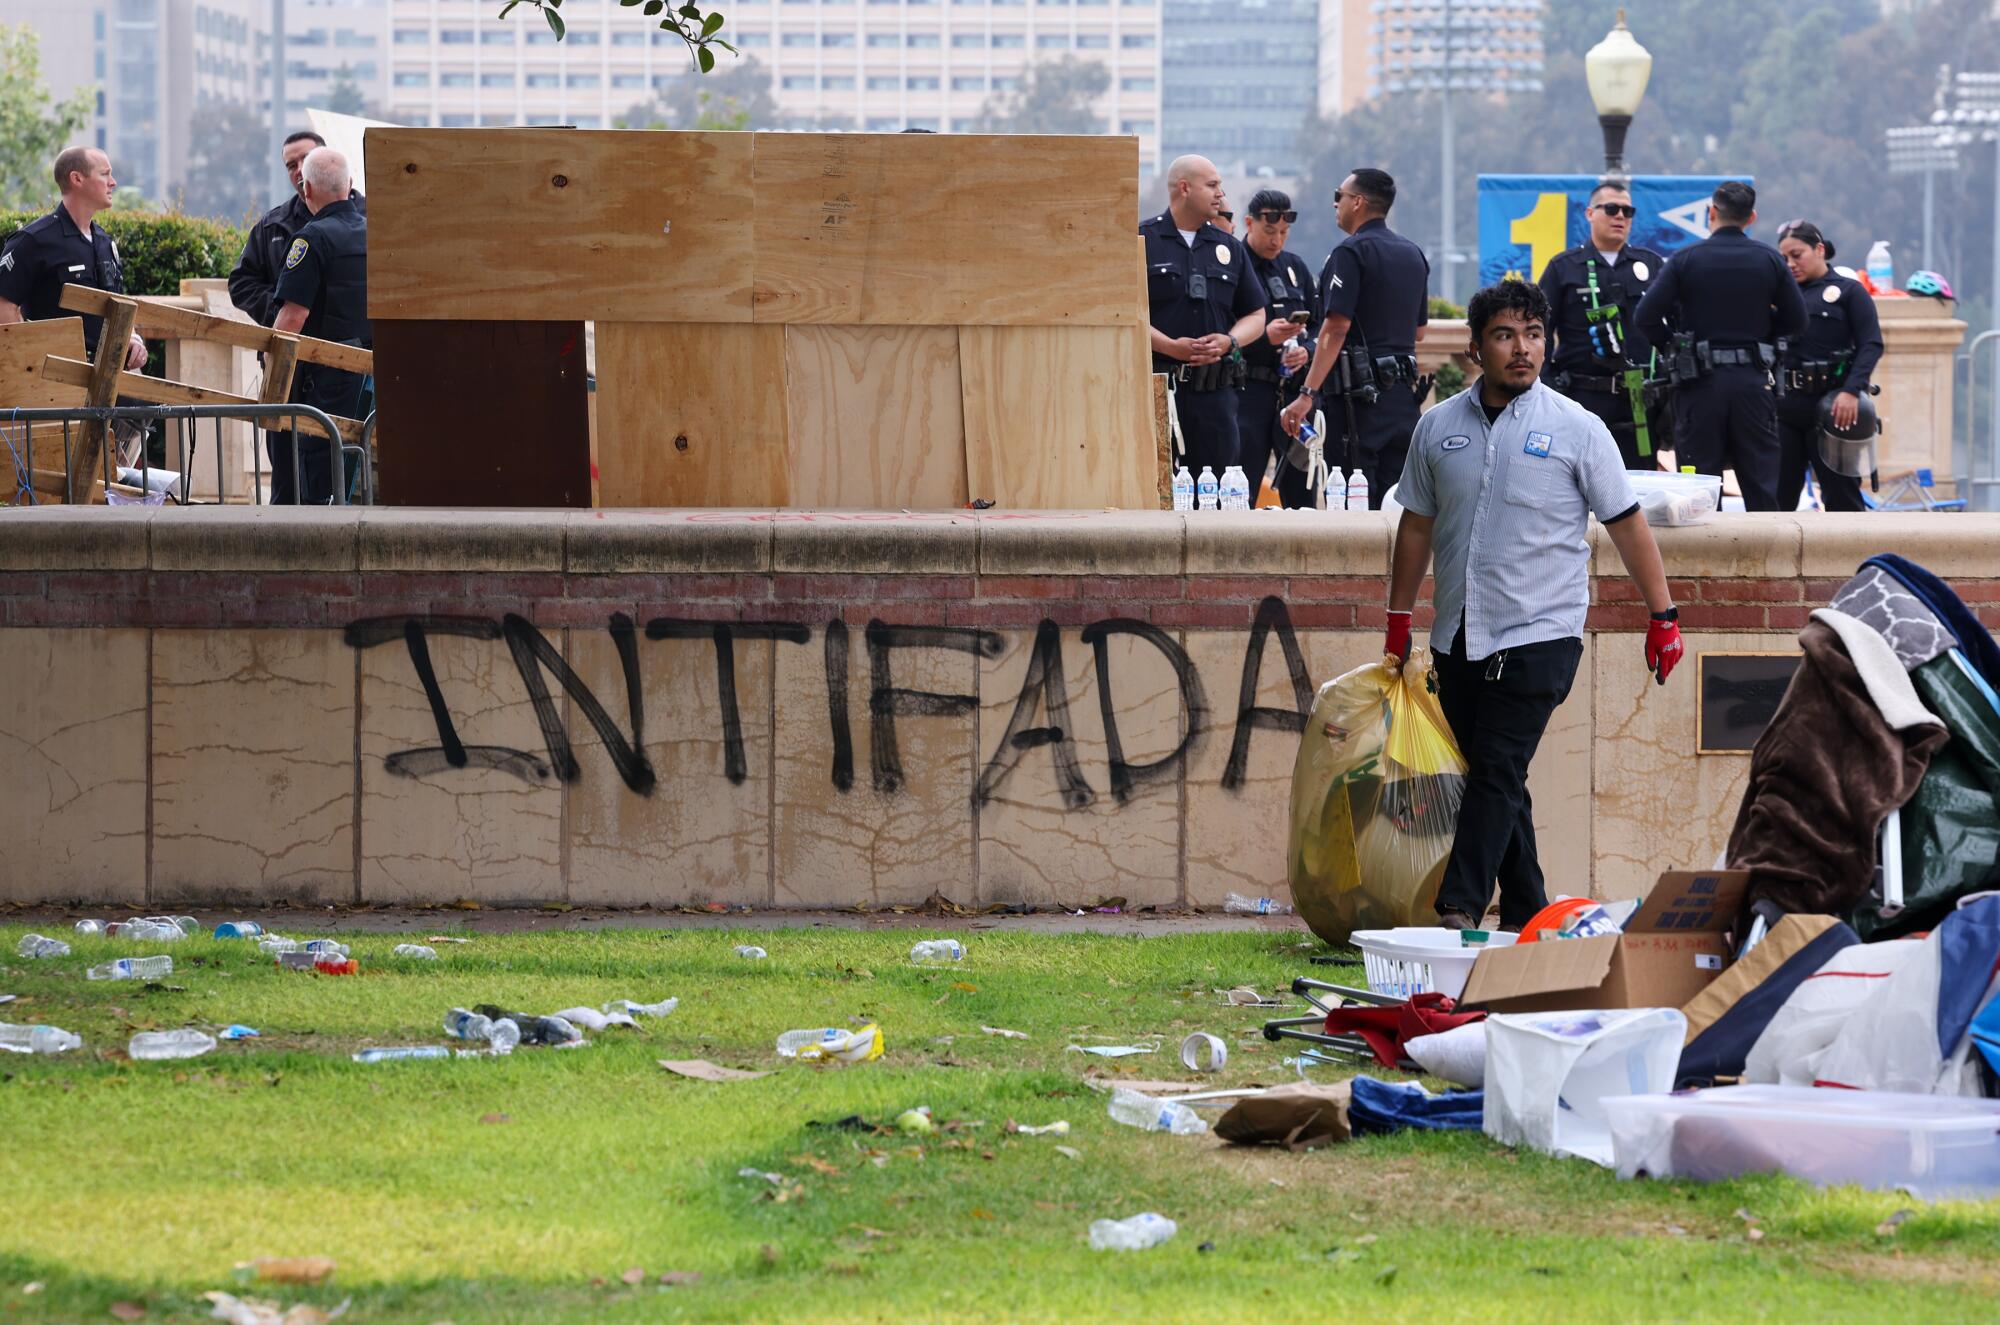 Um trabalhador da UCLA carregando uma sacola grande, com policiais ao fundo e a palavra "Intifada" rabiscado em uma barreira